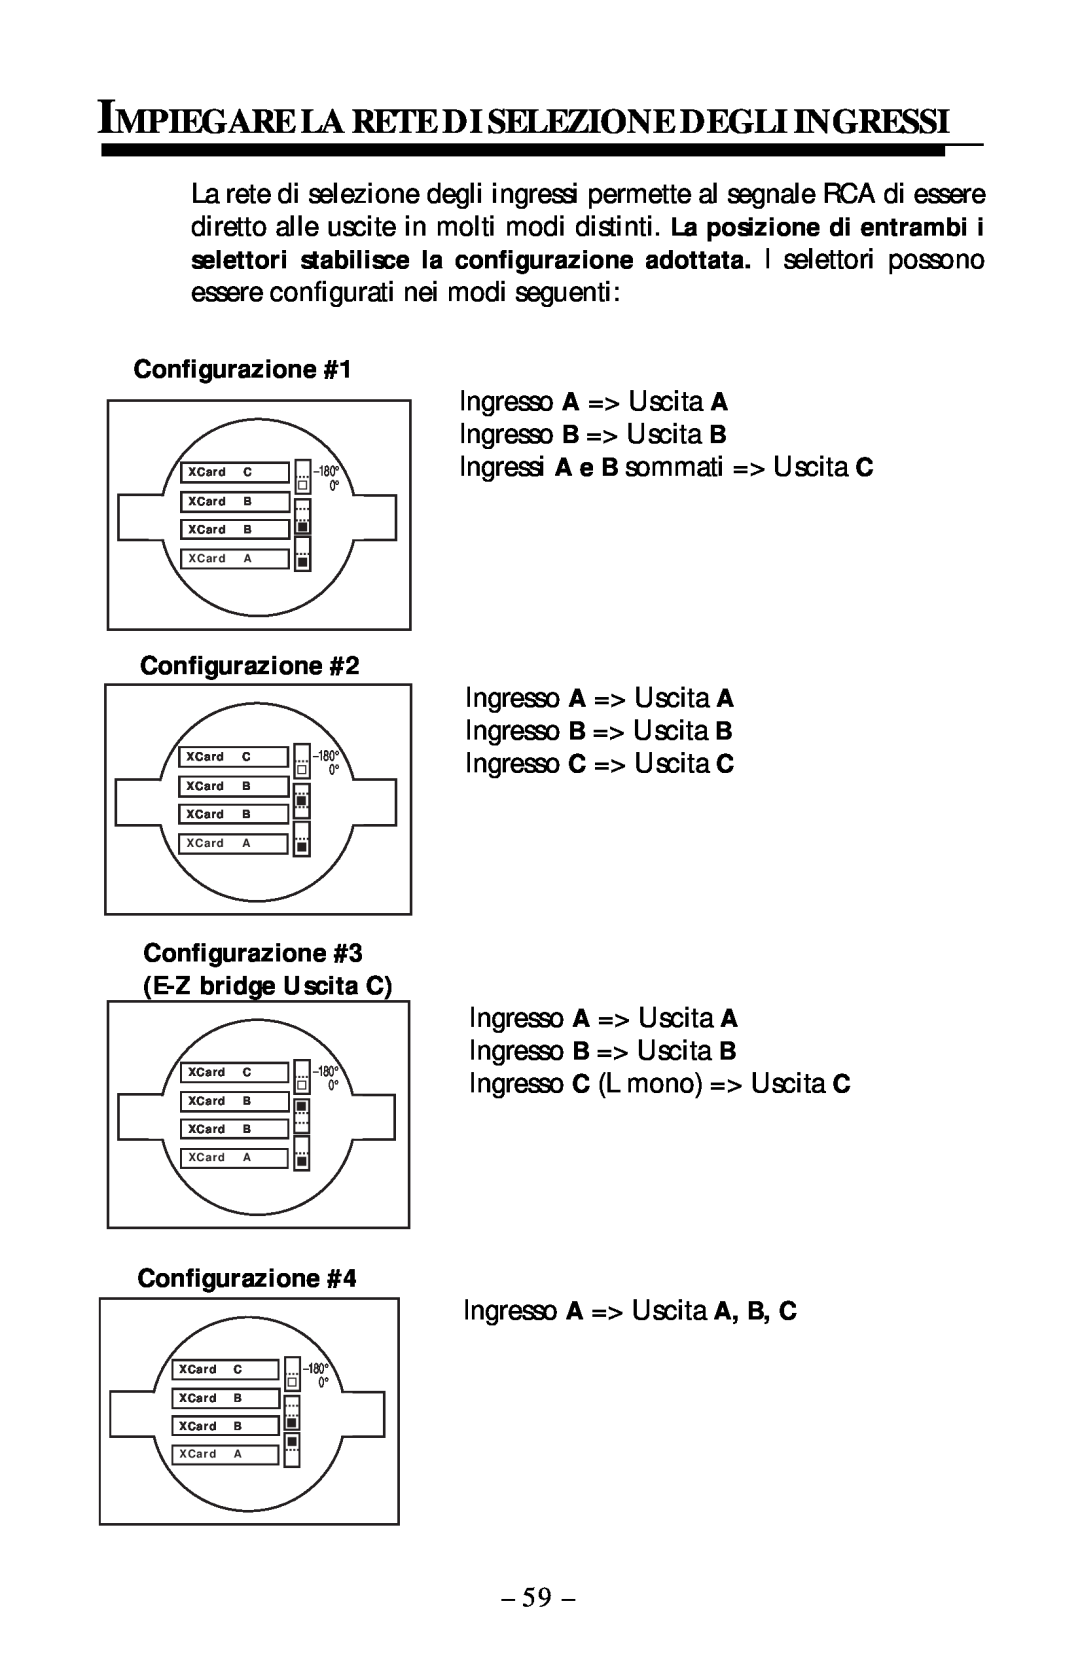 Rockford Fosgate 360.6 manual Impiegare La Rete Di Selezione Degli Ingressi, Configurazione #1, Configurazione #2 